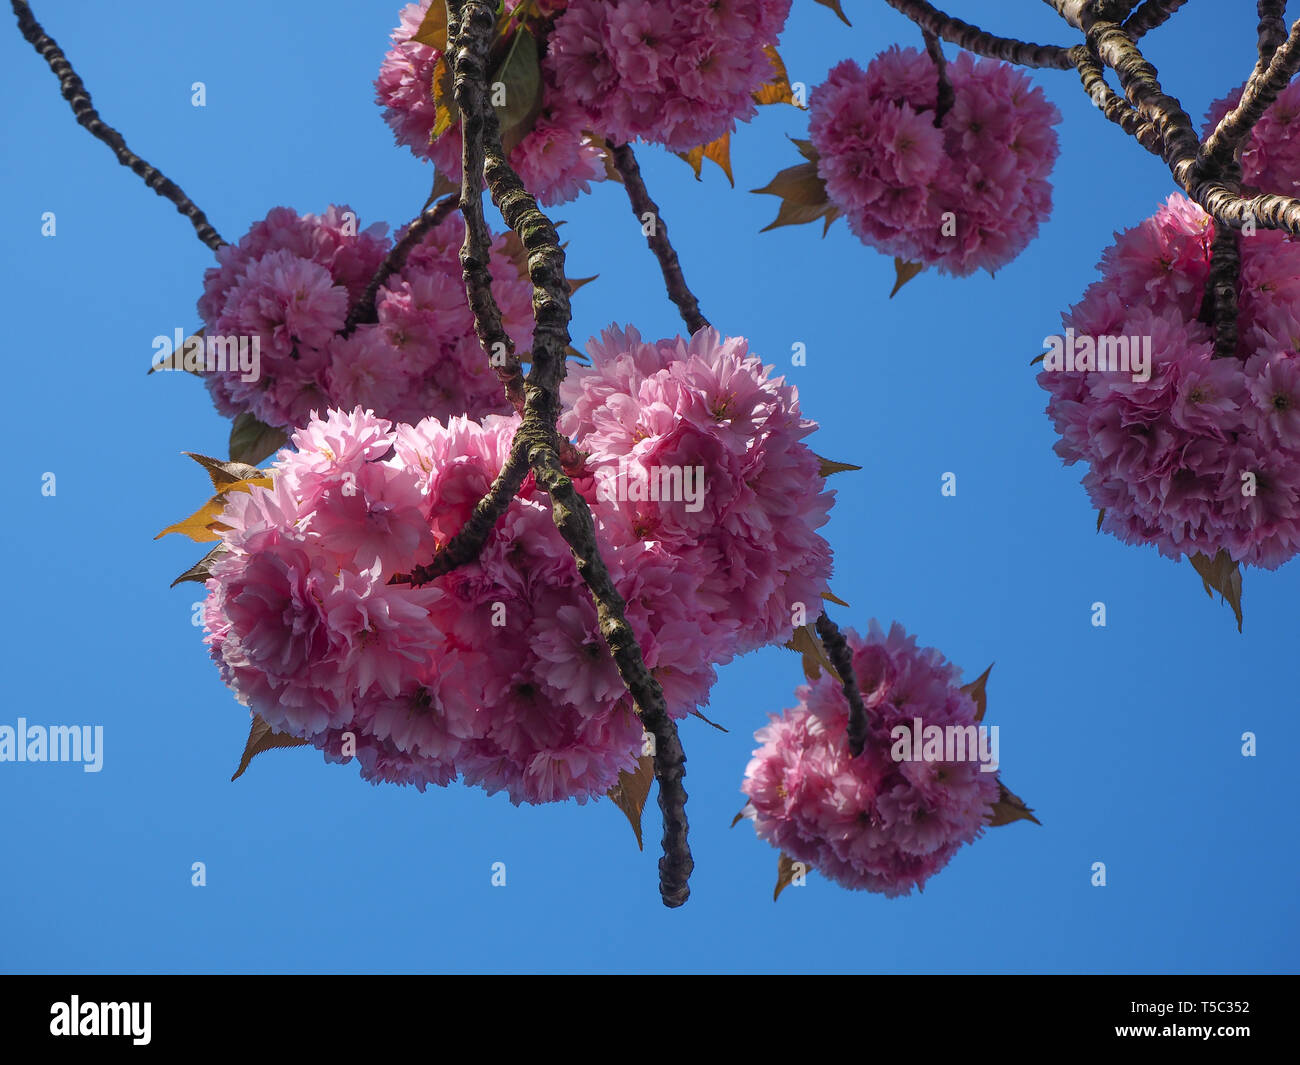 Di un bel colore rosa fiori di ciliegio su un ramo di albero visto da sotto con un cielo azzurro sullo sfondo Foto Stock